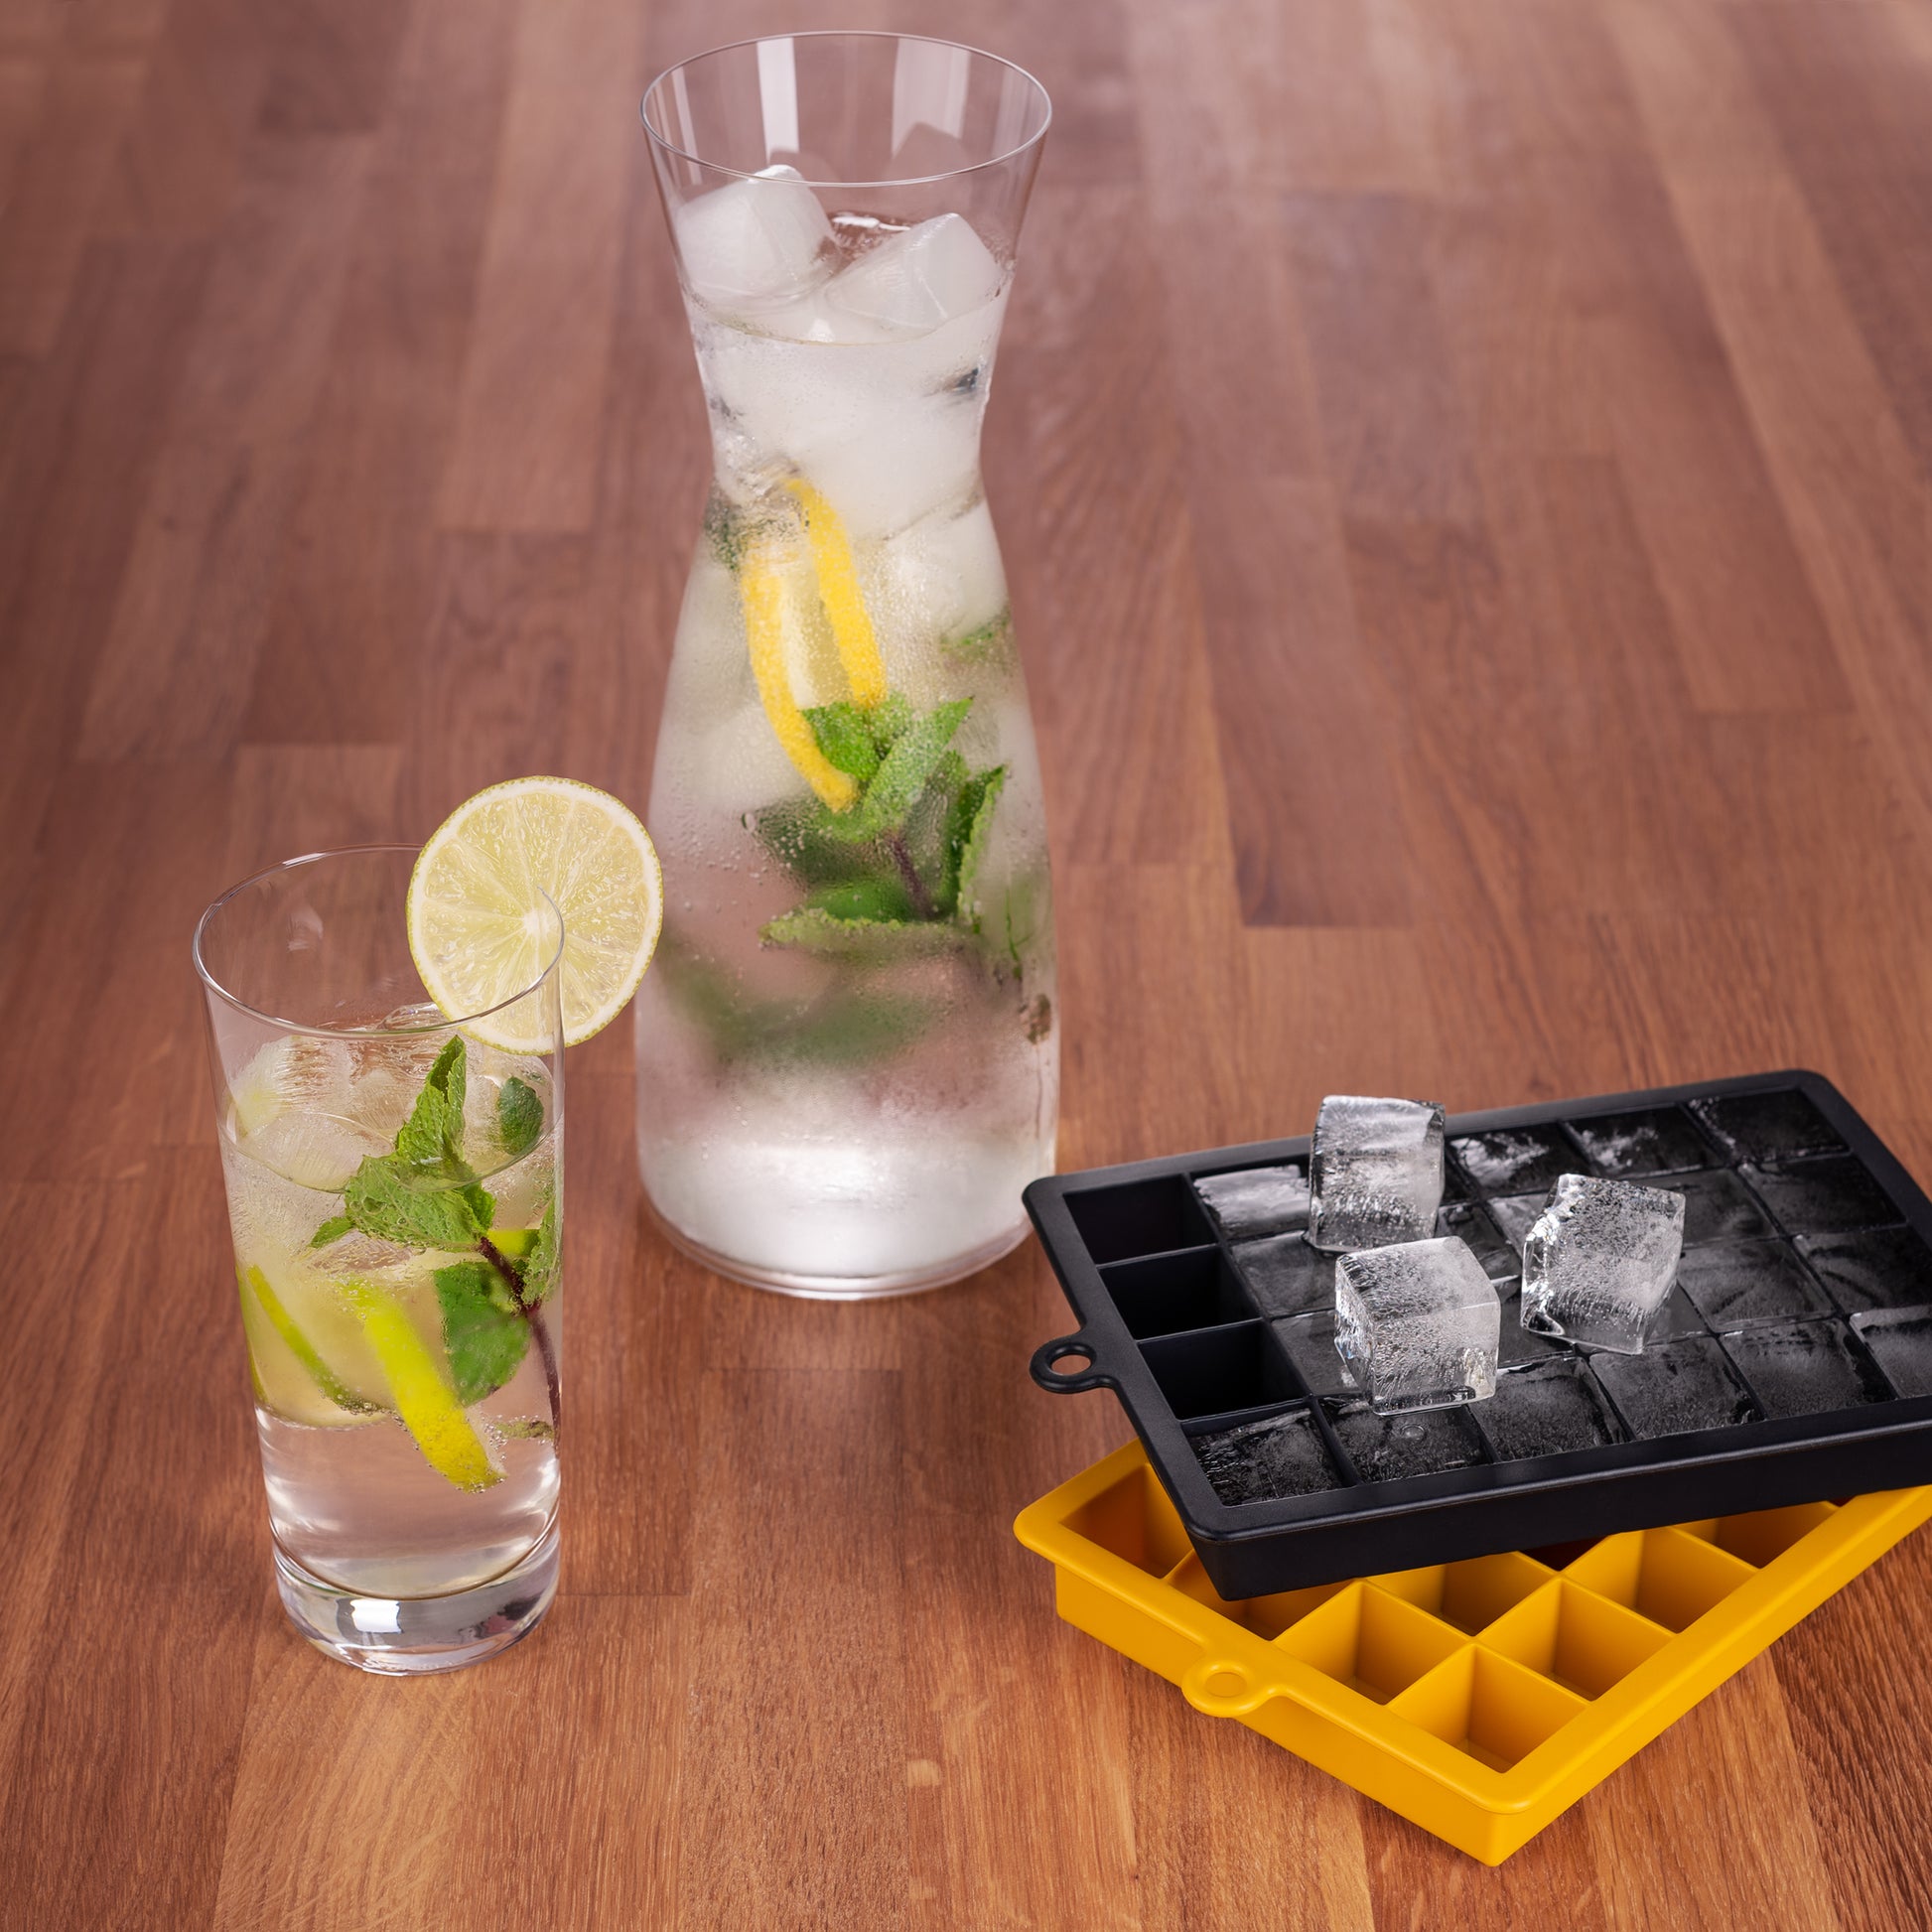 Getränke in Gläsern mit Eiswürfeln neben schwarzer und gelber Eiswürfelform auf Holztisch.